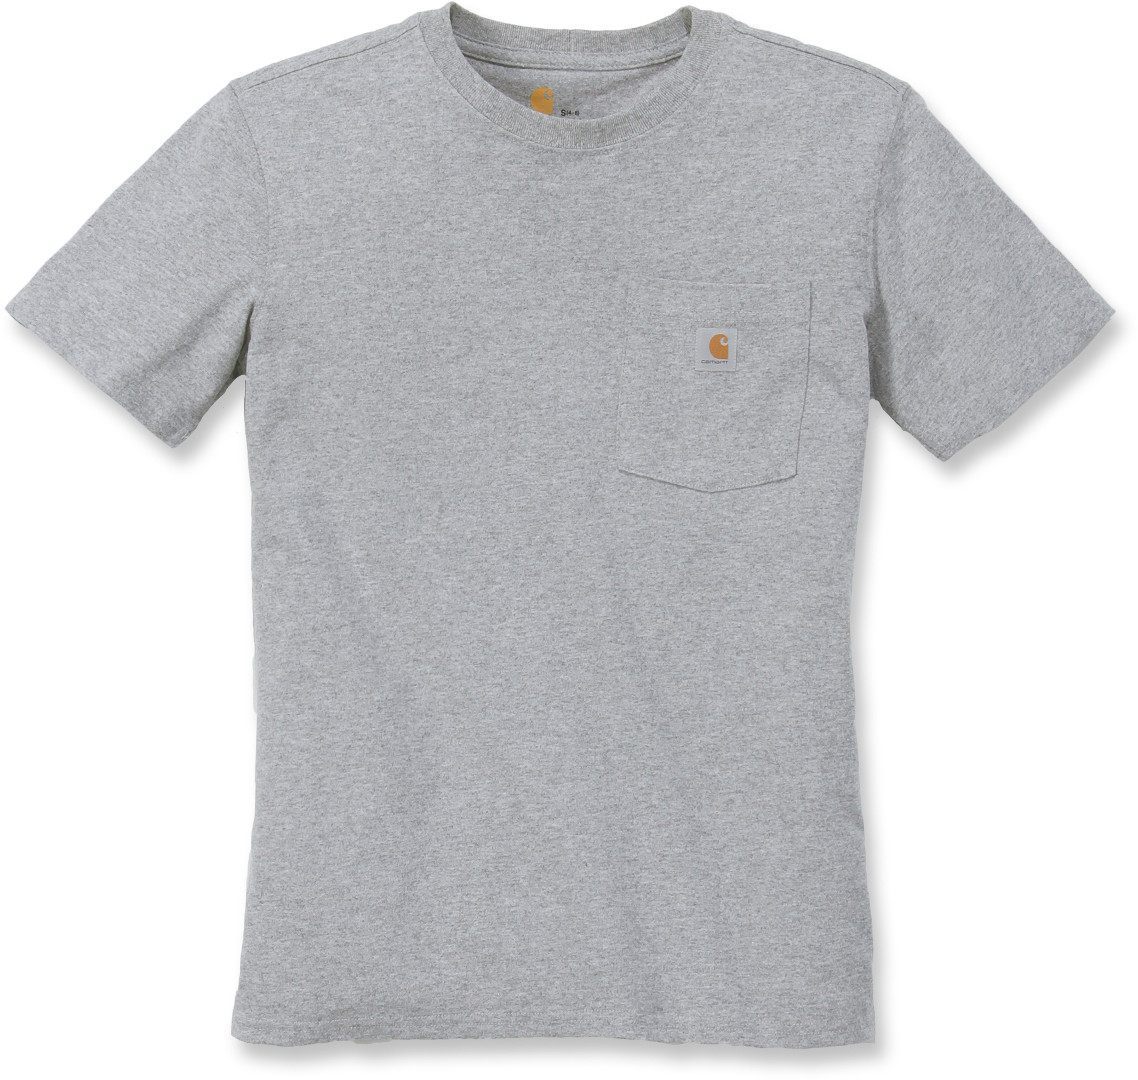 Carhartt Workwear Pocket Camiseta para mujeres - Gris (M)